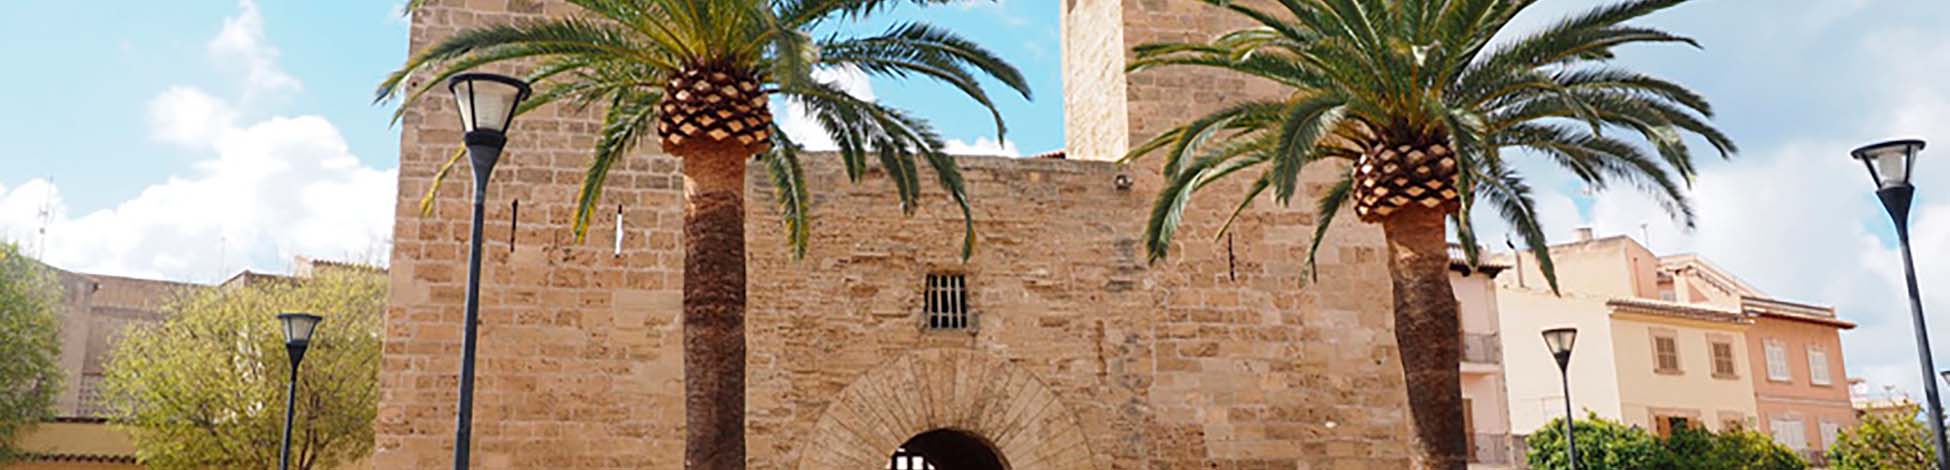 Imagen recurso del puerto de destino Mallorca (Alcudia) para la ruta en ferry Menorca (Ciudadela) - Mallorca (Alcudia)